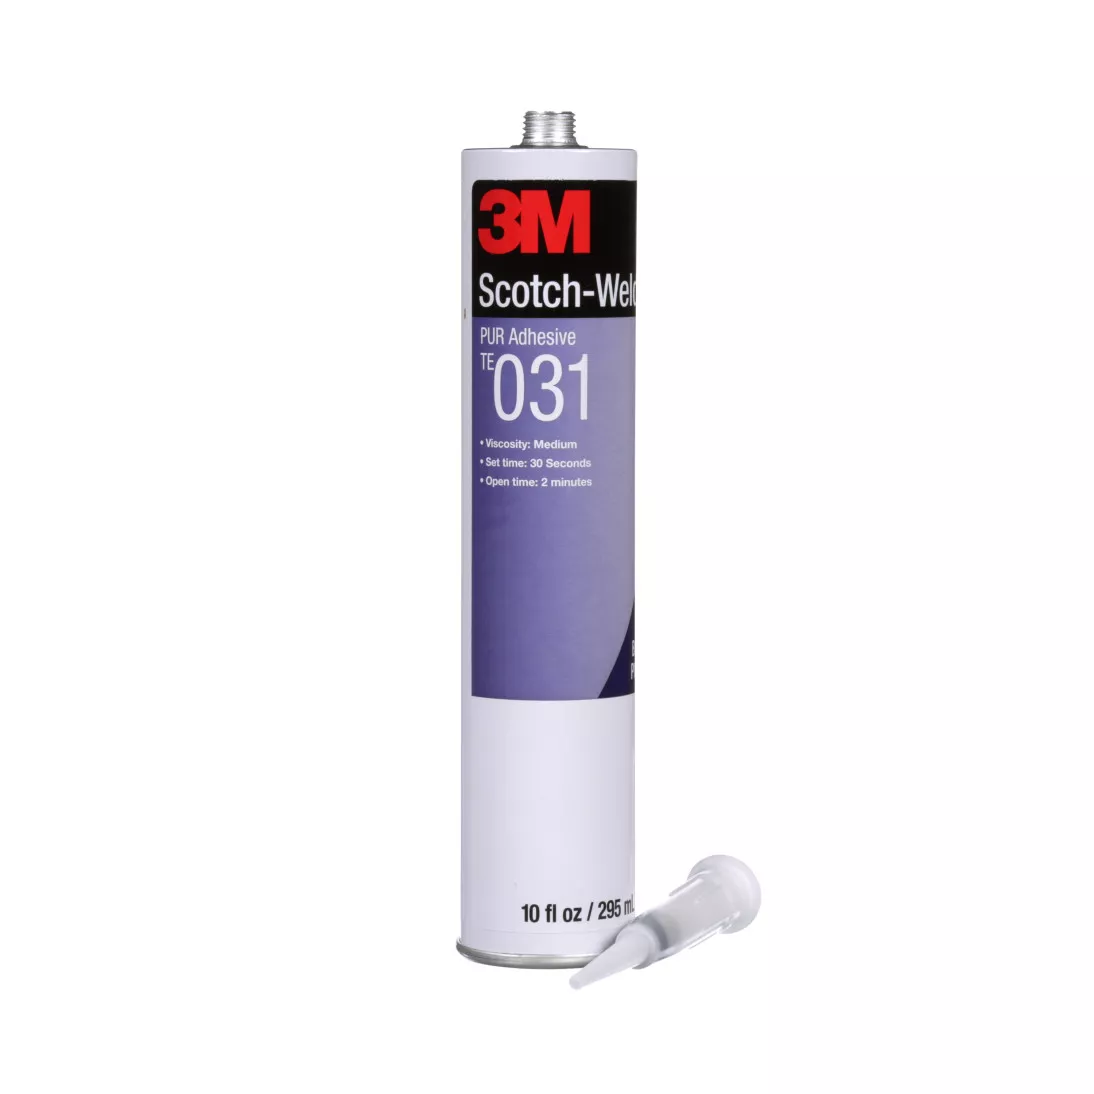 3M™ Scotch-Weld™ PUR Adhesive TE031, Off-White, 1/10 Gallon Cartidge,
5/case